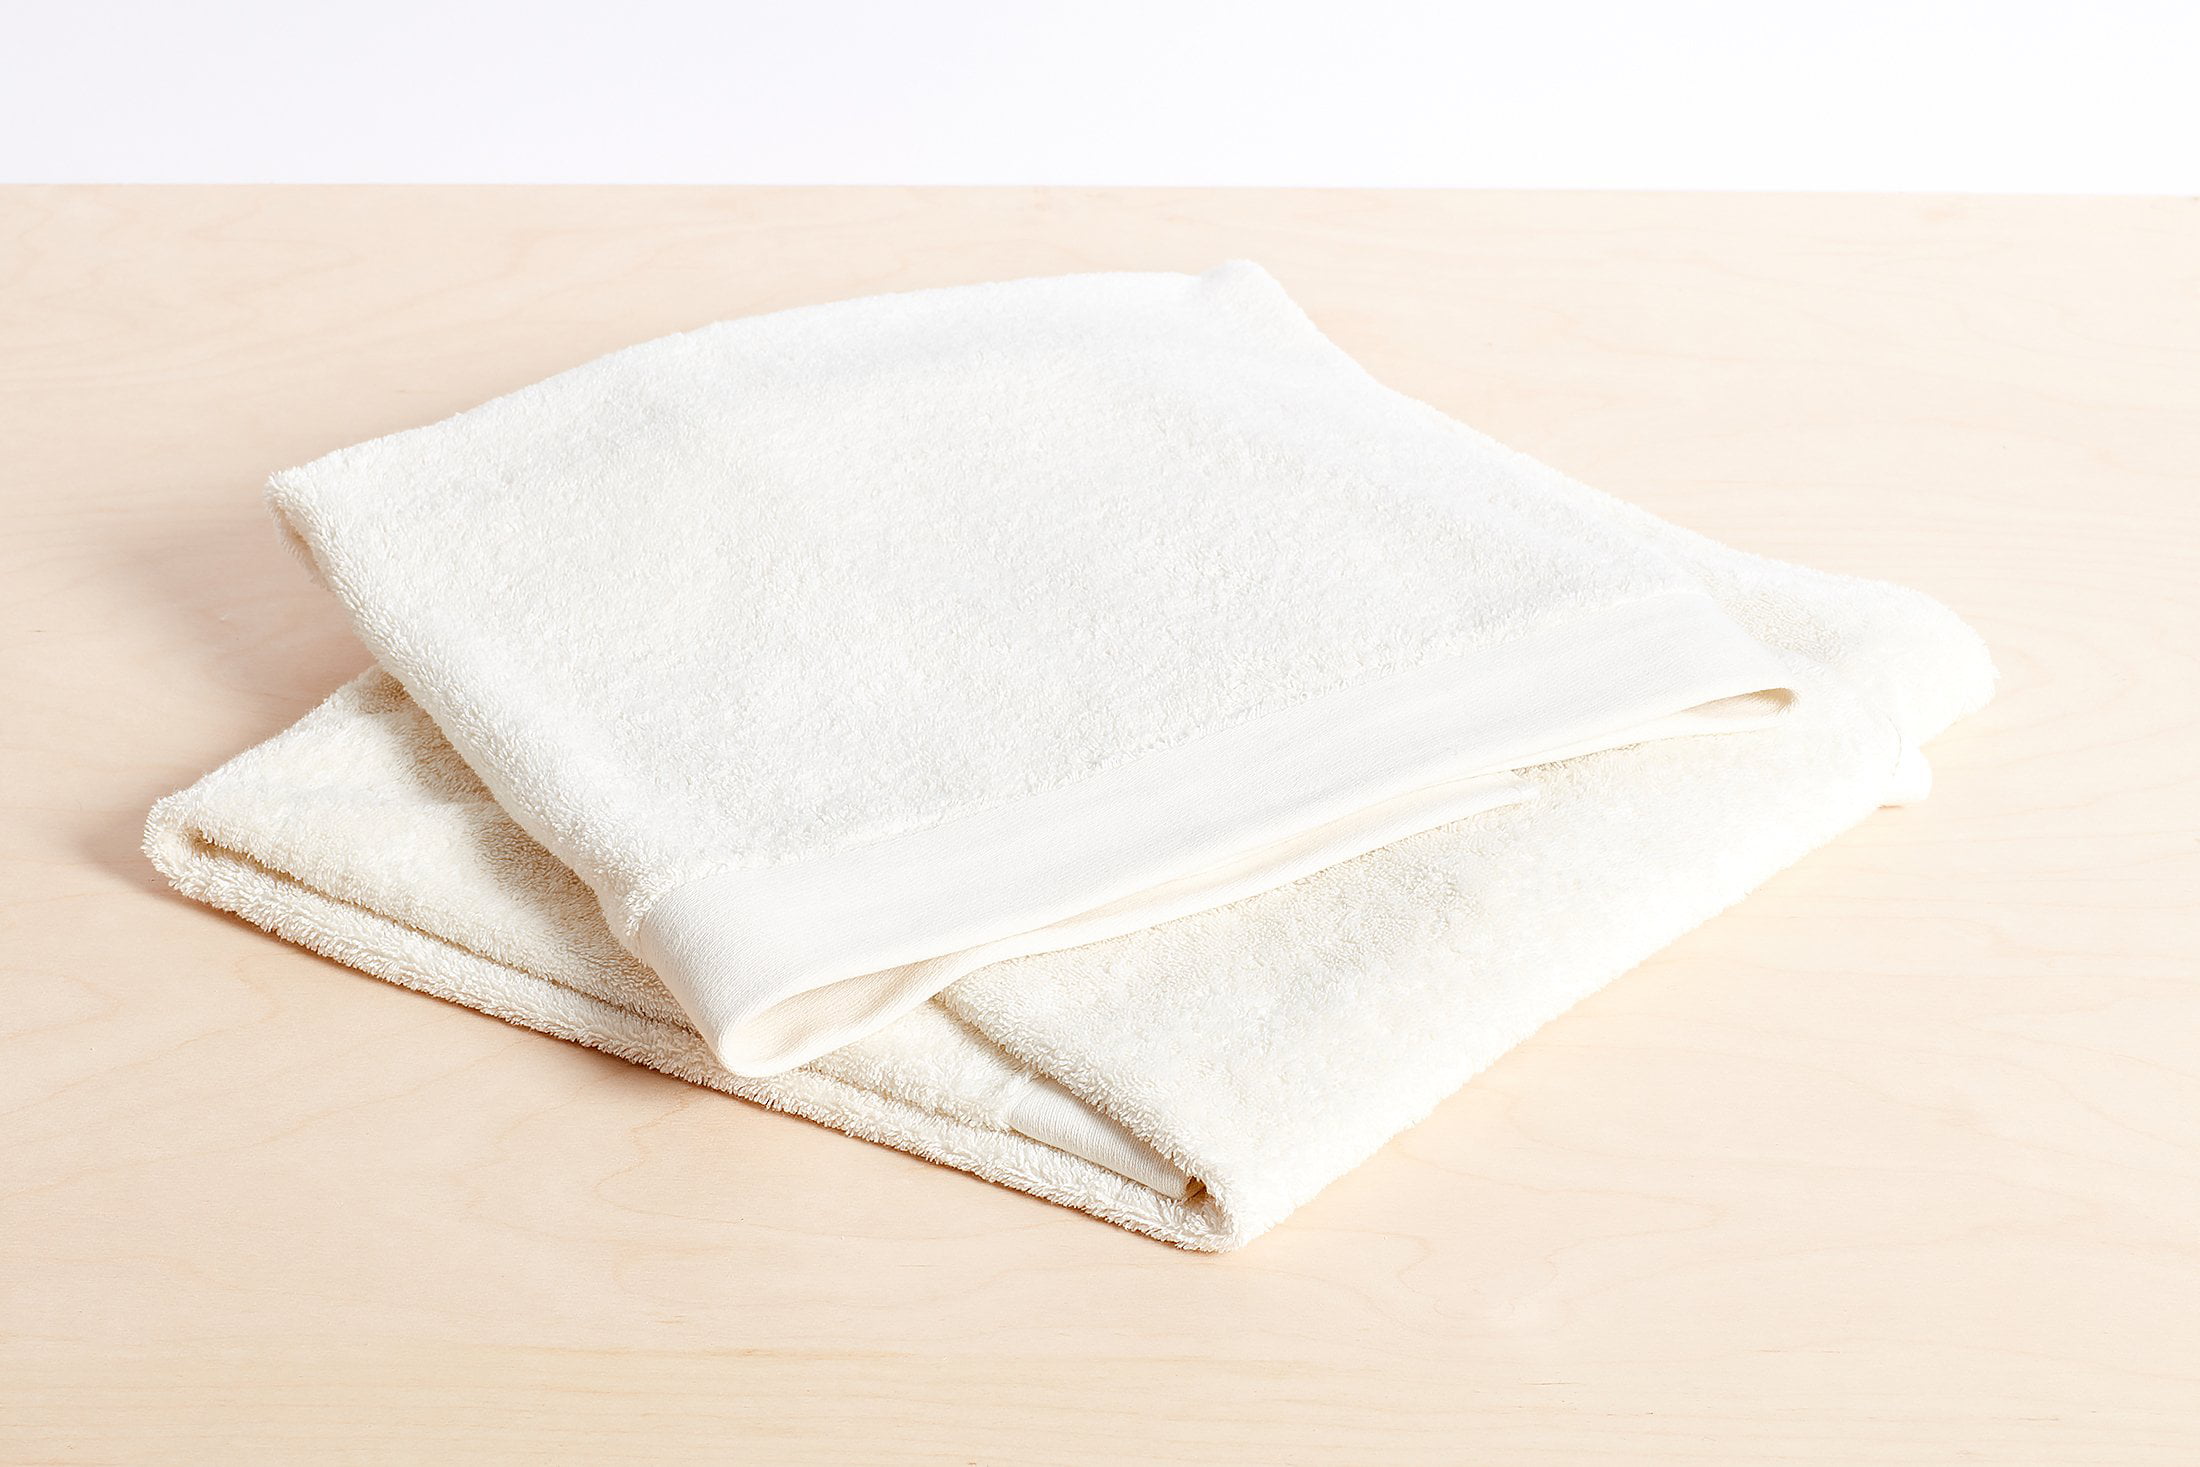 Aware 100% Organic Cotton Plush Bath Towels - 6-Piece Set, White,  56L x 30W